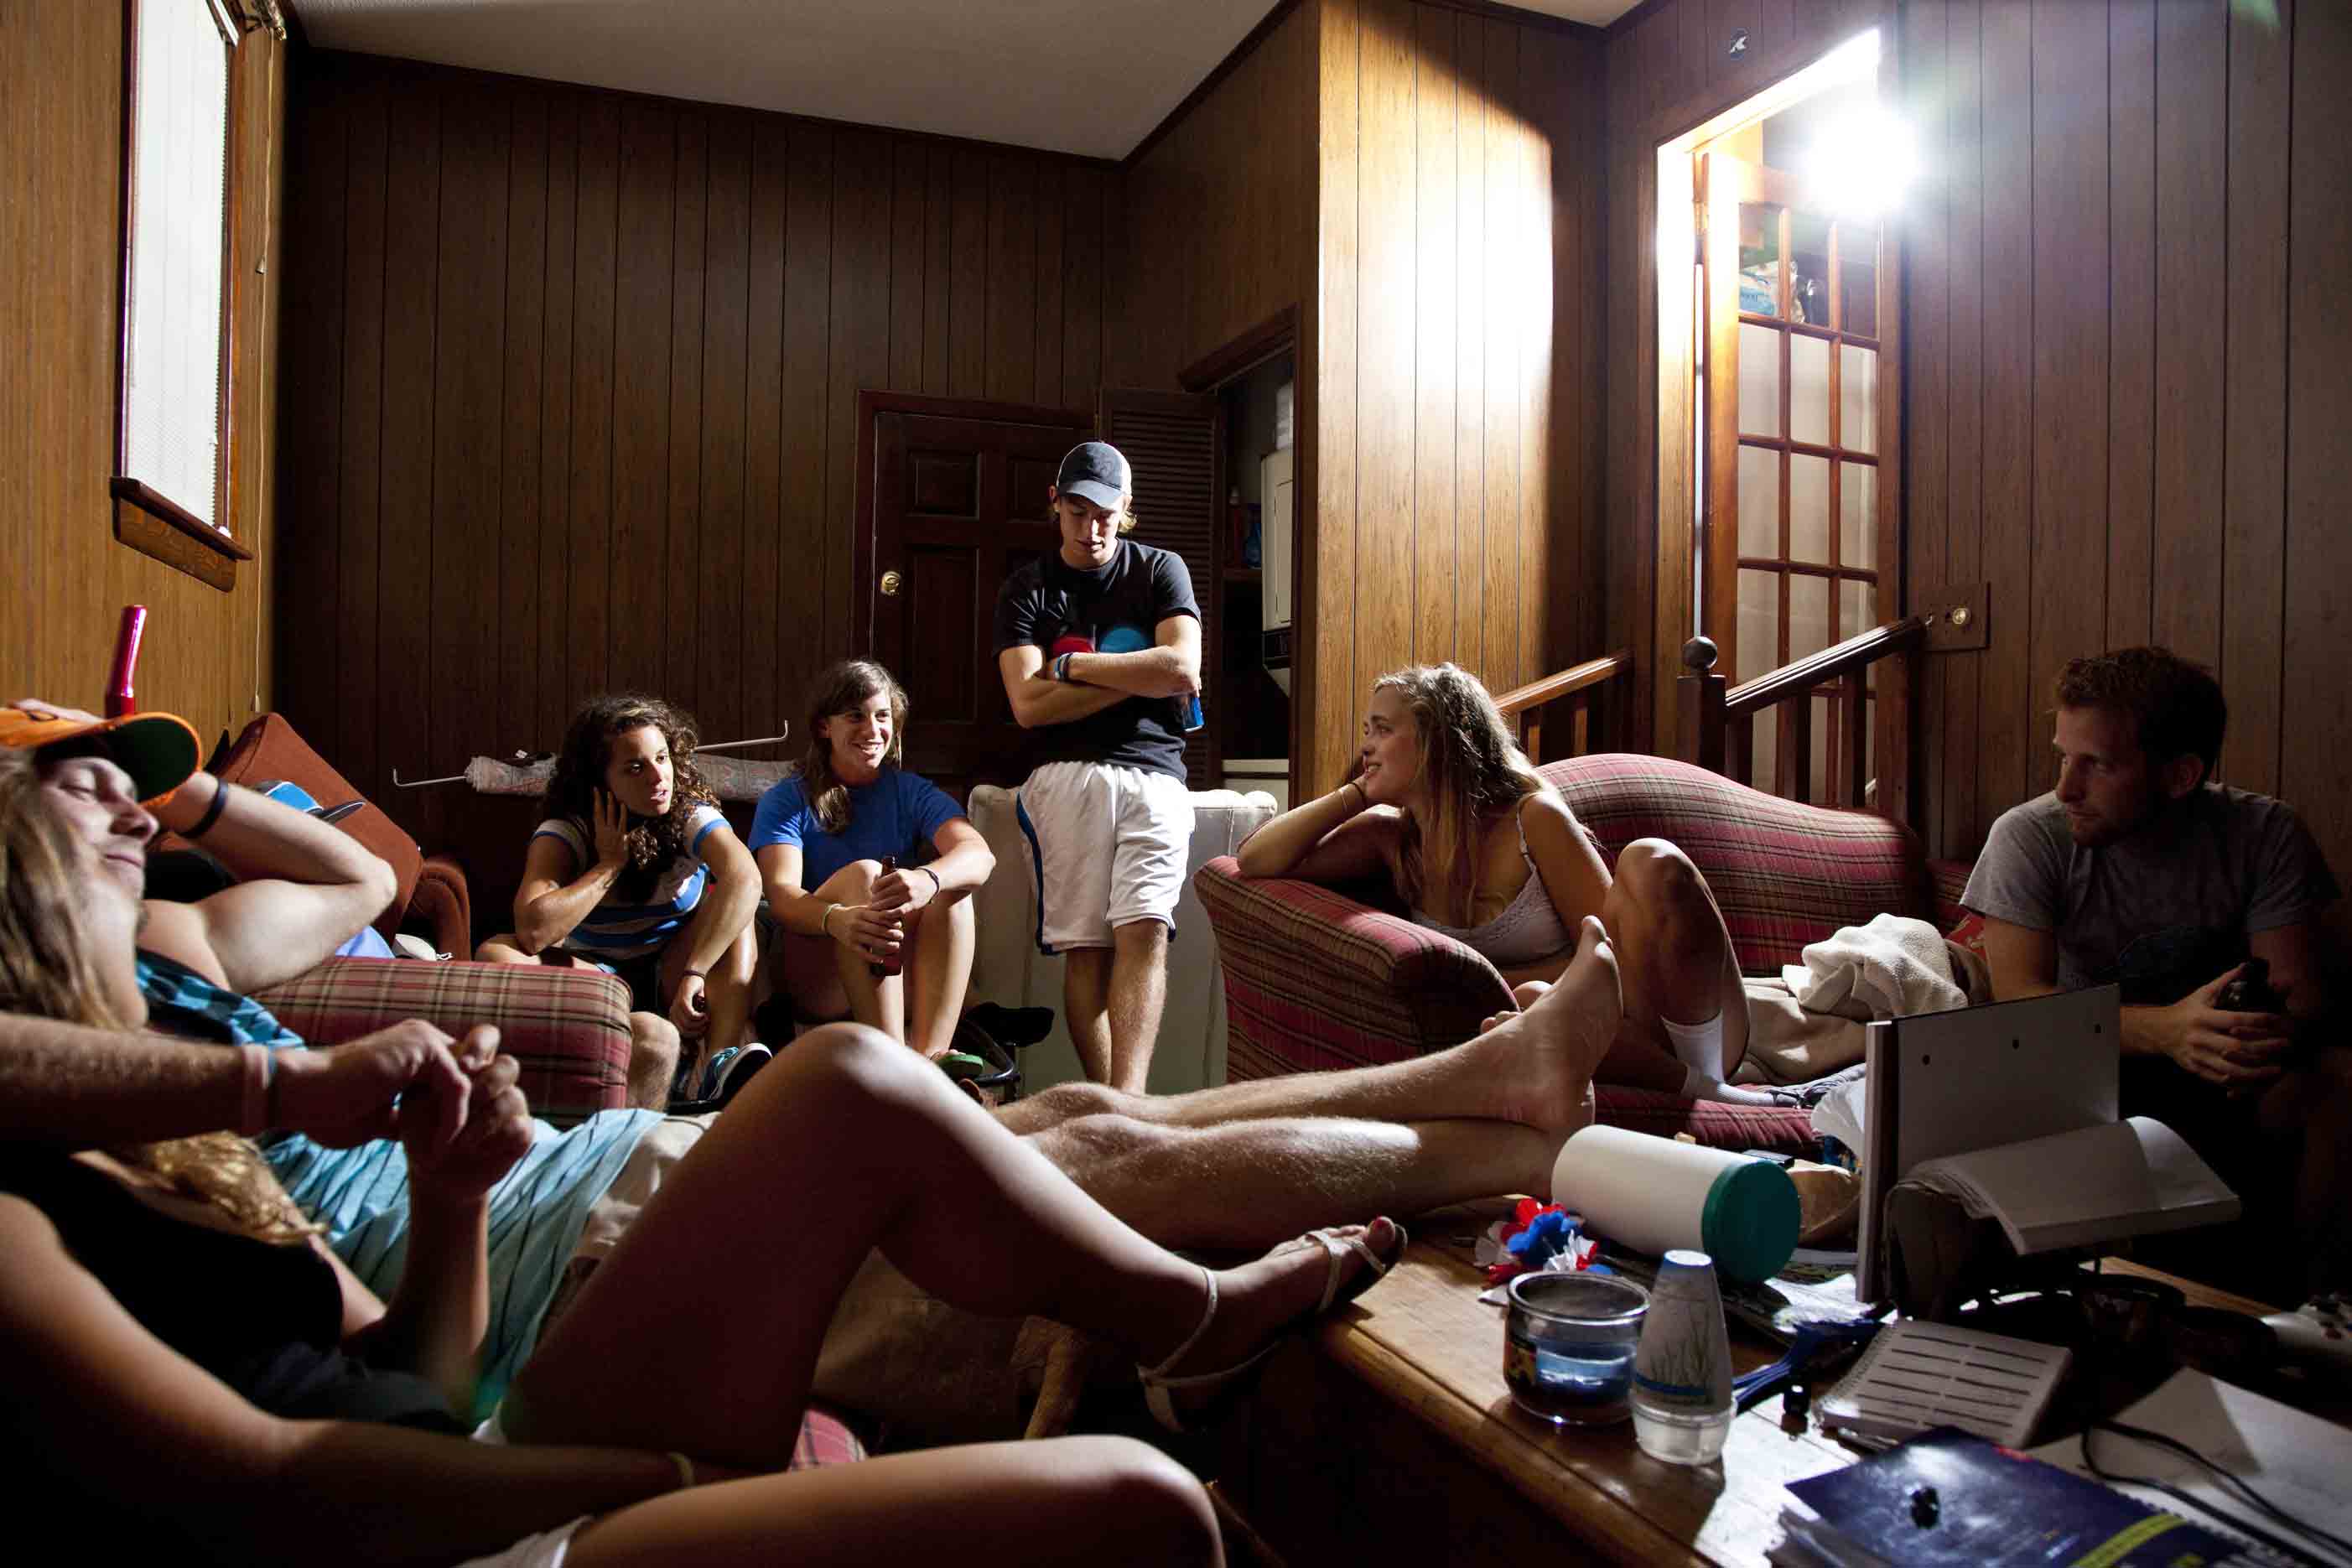 Пять девушек в гольфах демонстрируют голые писечки в комнате общежития